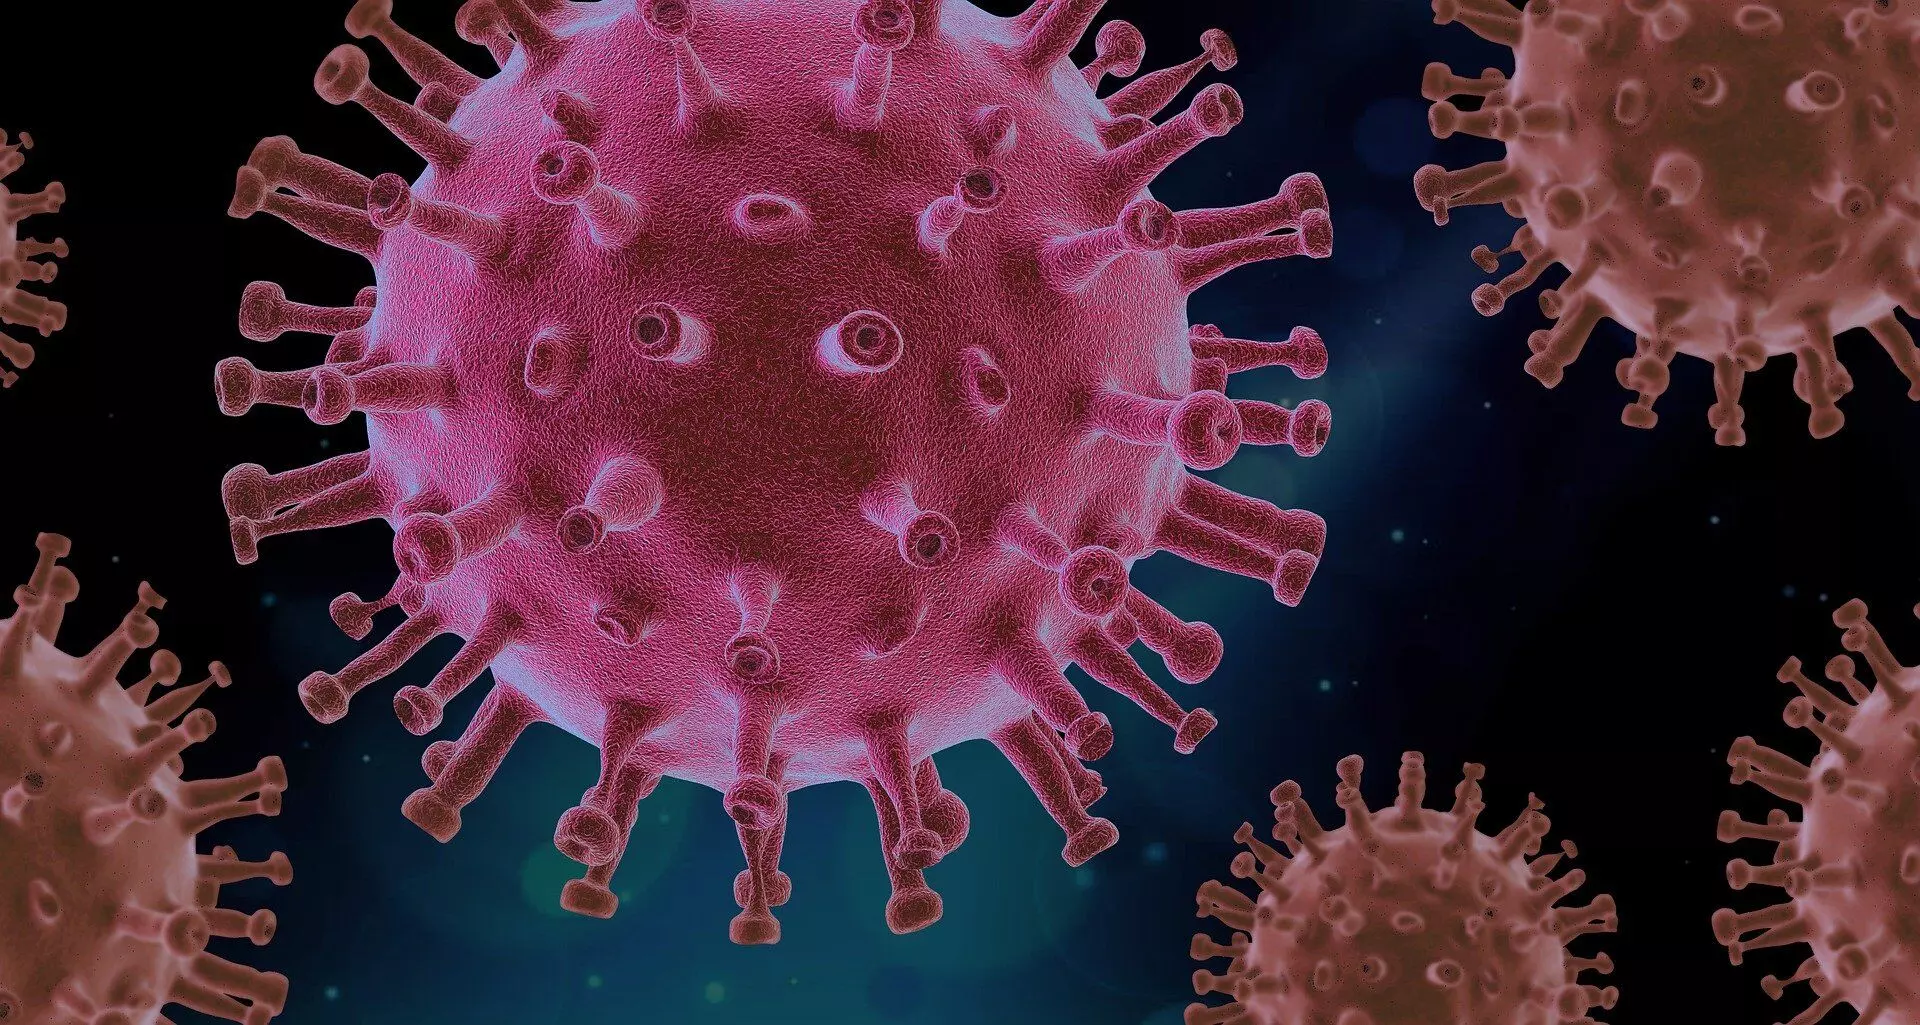 अक्टूबर में आ सकती है कोरोना वायरस की तीसरी लहर, राष्ट्रीय आपदा प्रबंधन संस्थान ने पीएमओ को दी रिपोर्ट